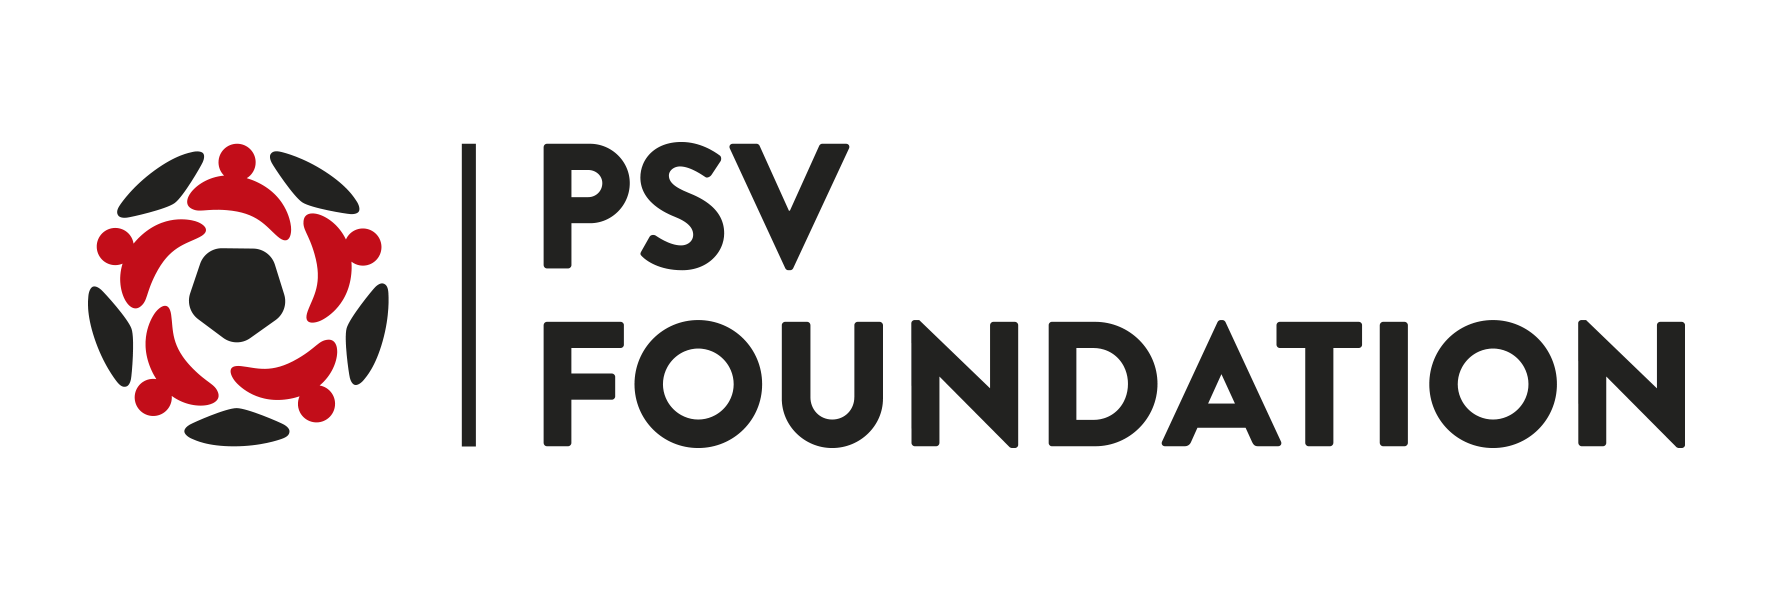 Logo psv foundation